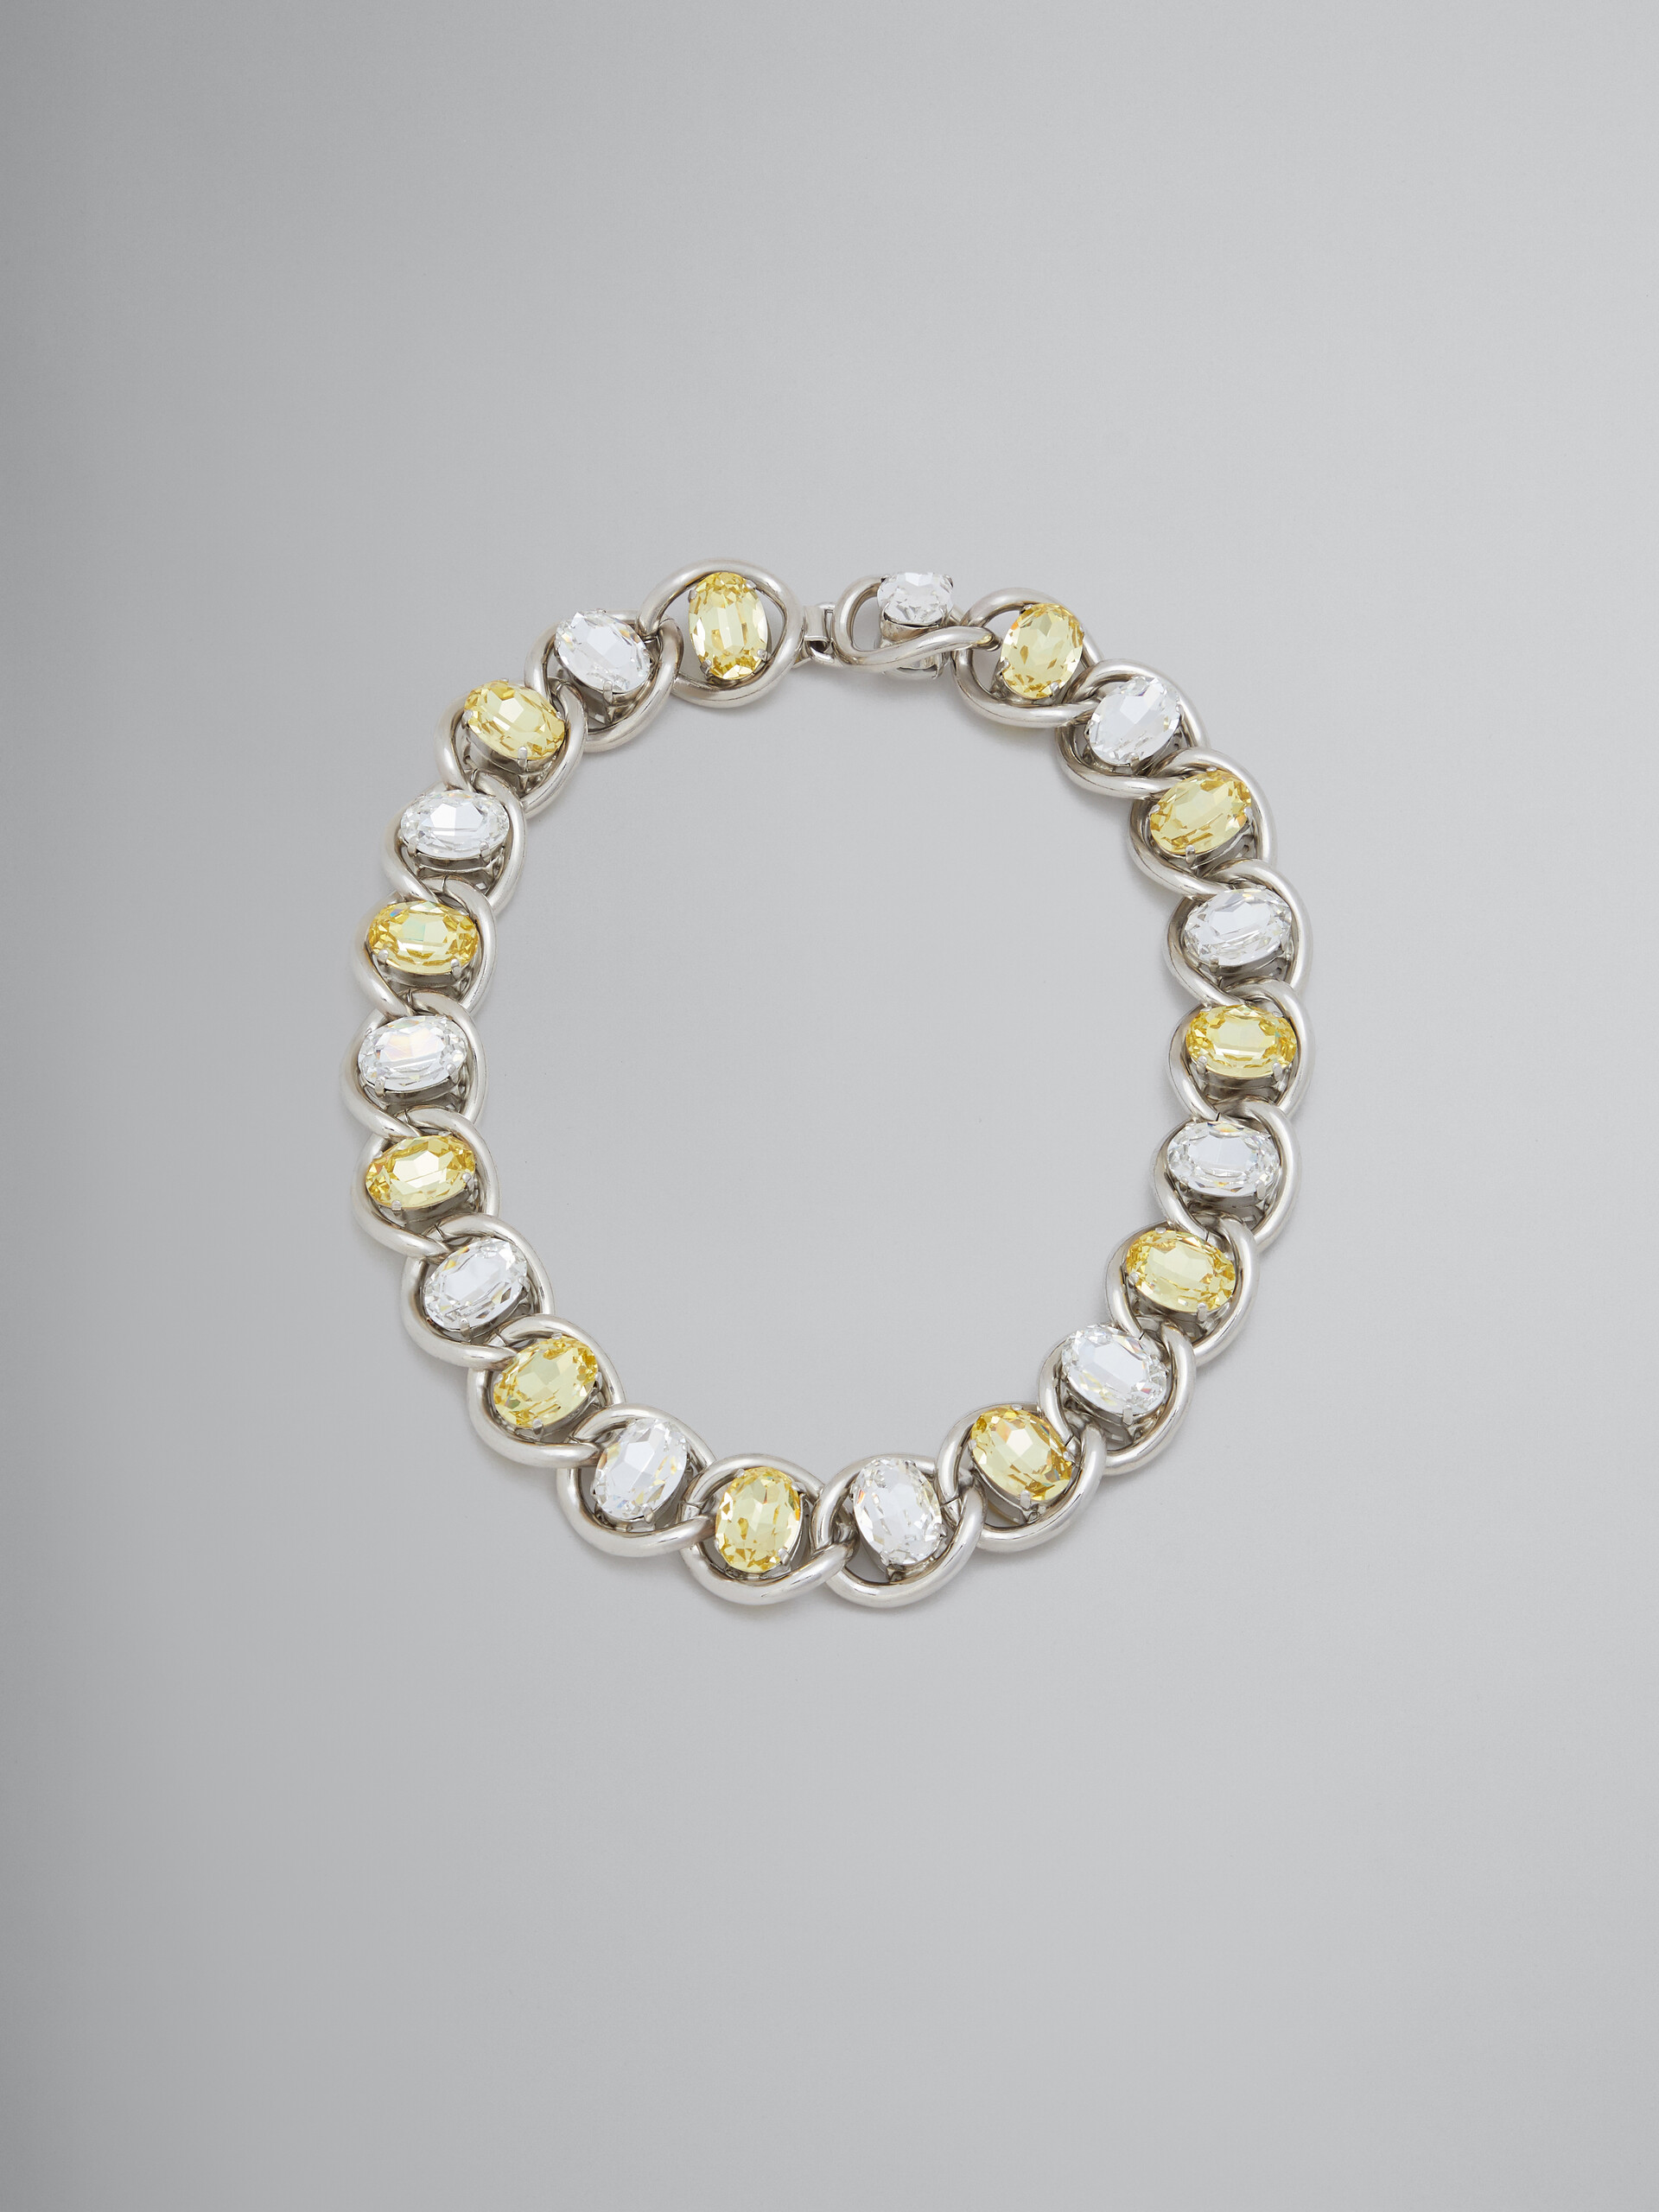 Collier en chaîne épaisse avec strass transparents et jaunes - Colliers - Image 1